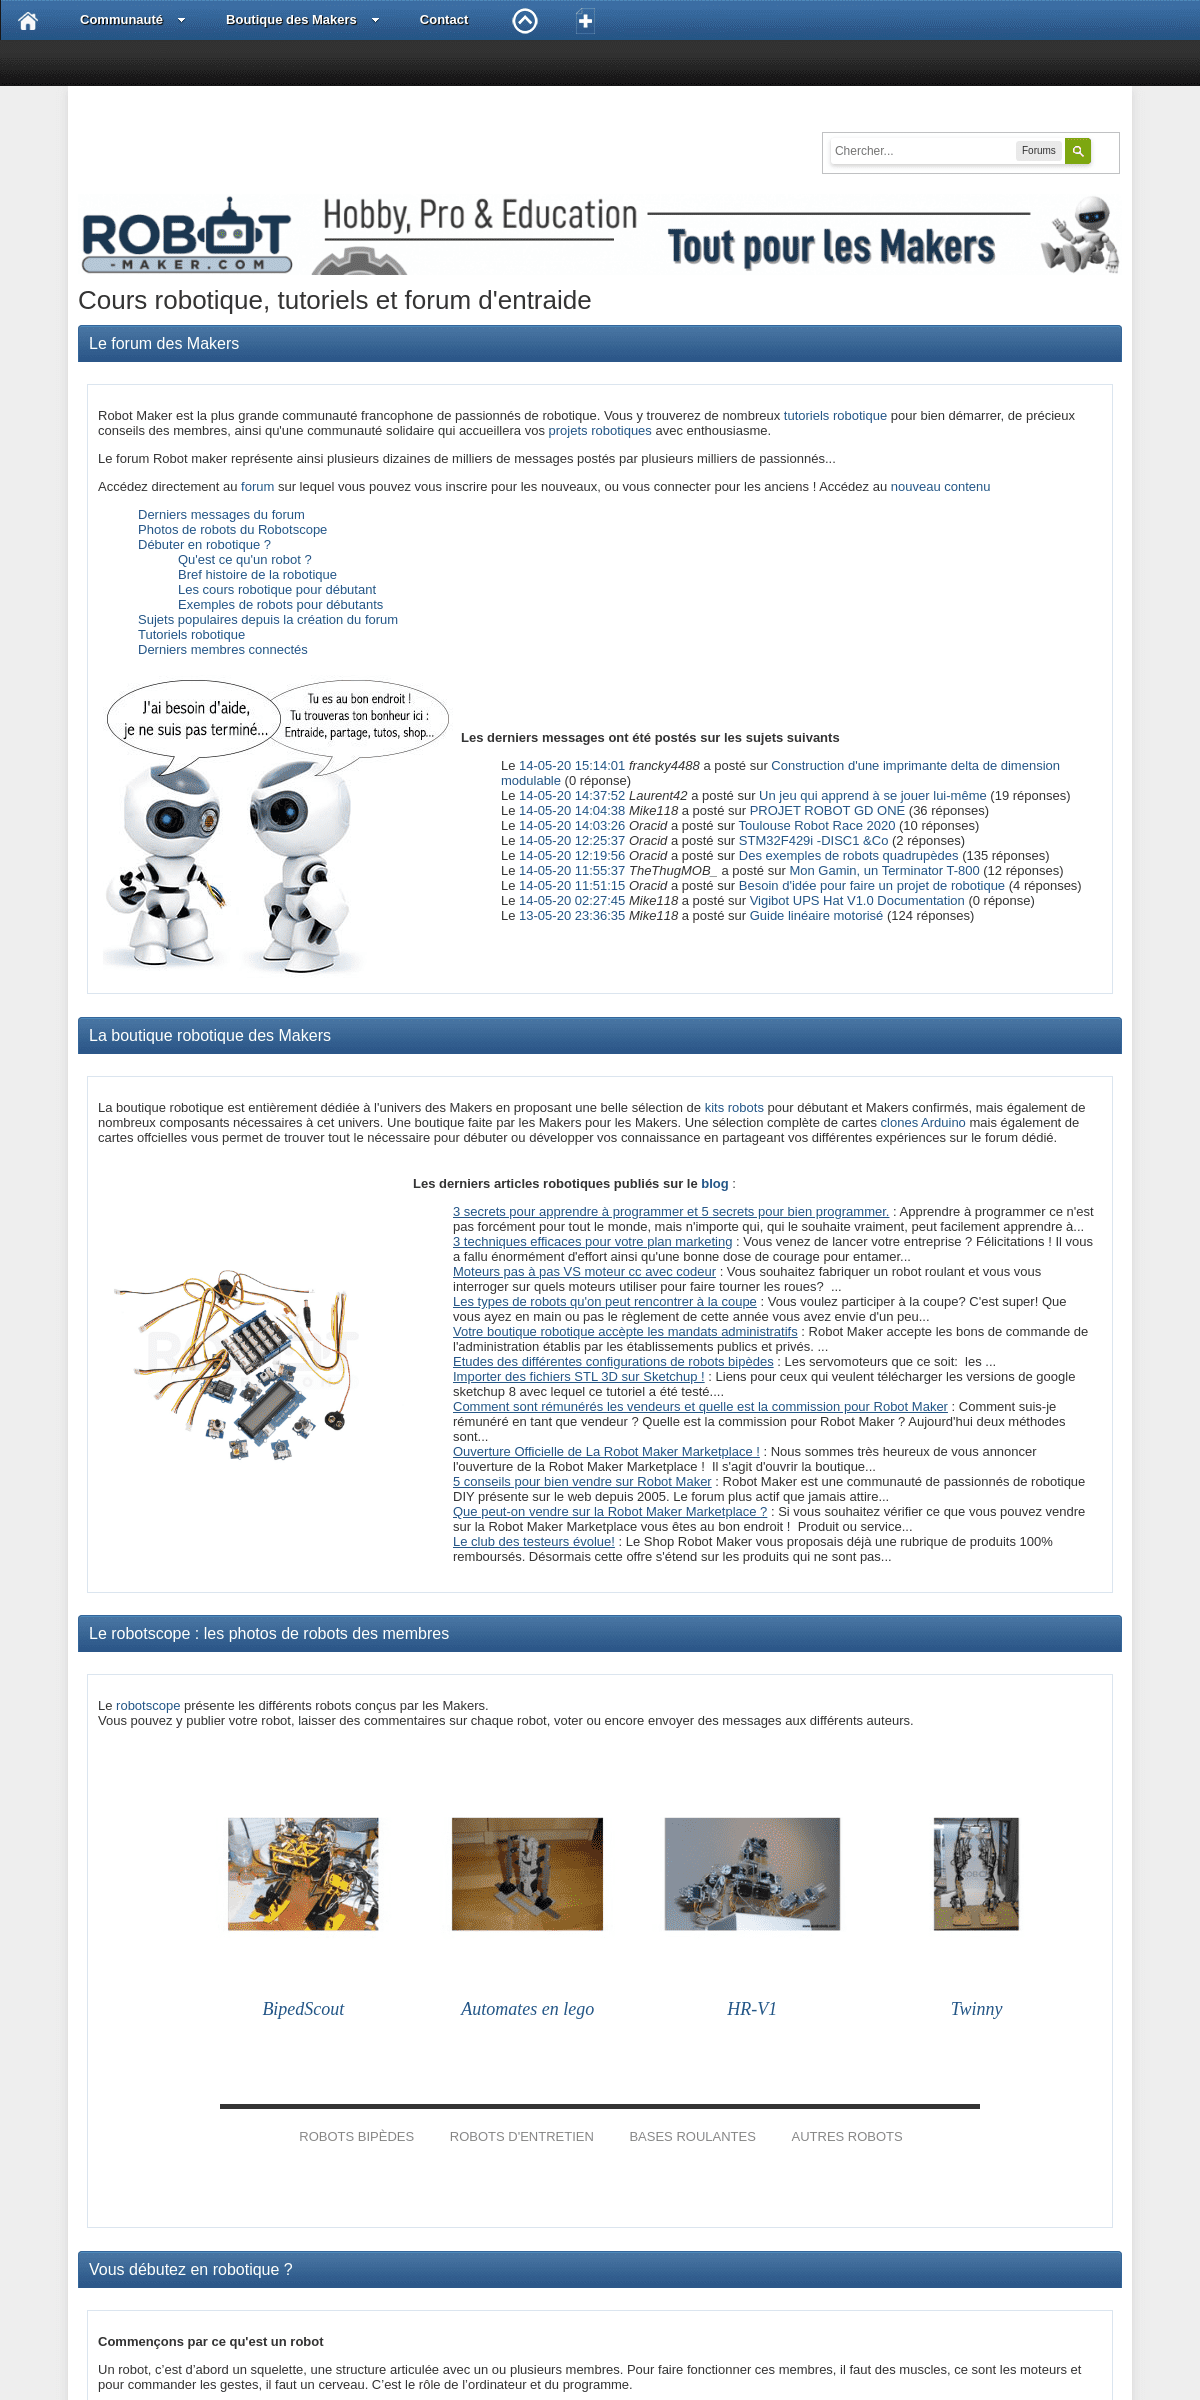 A complete backup of robot-maker.com